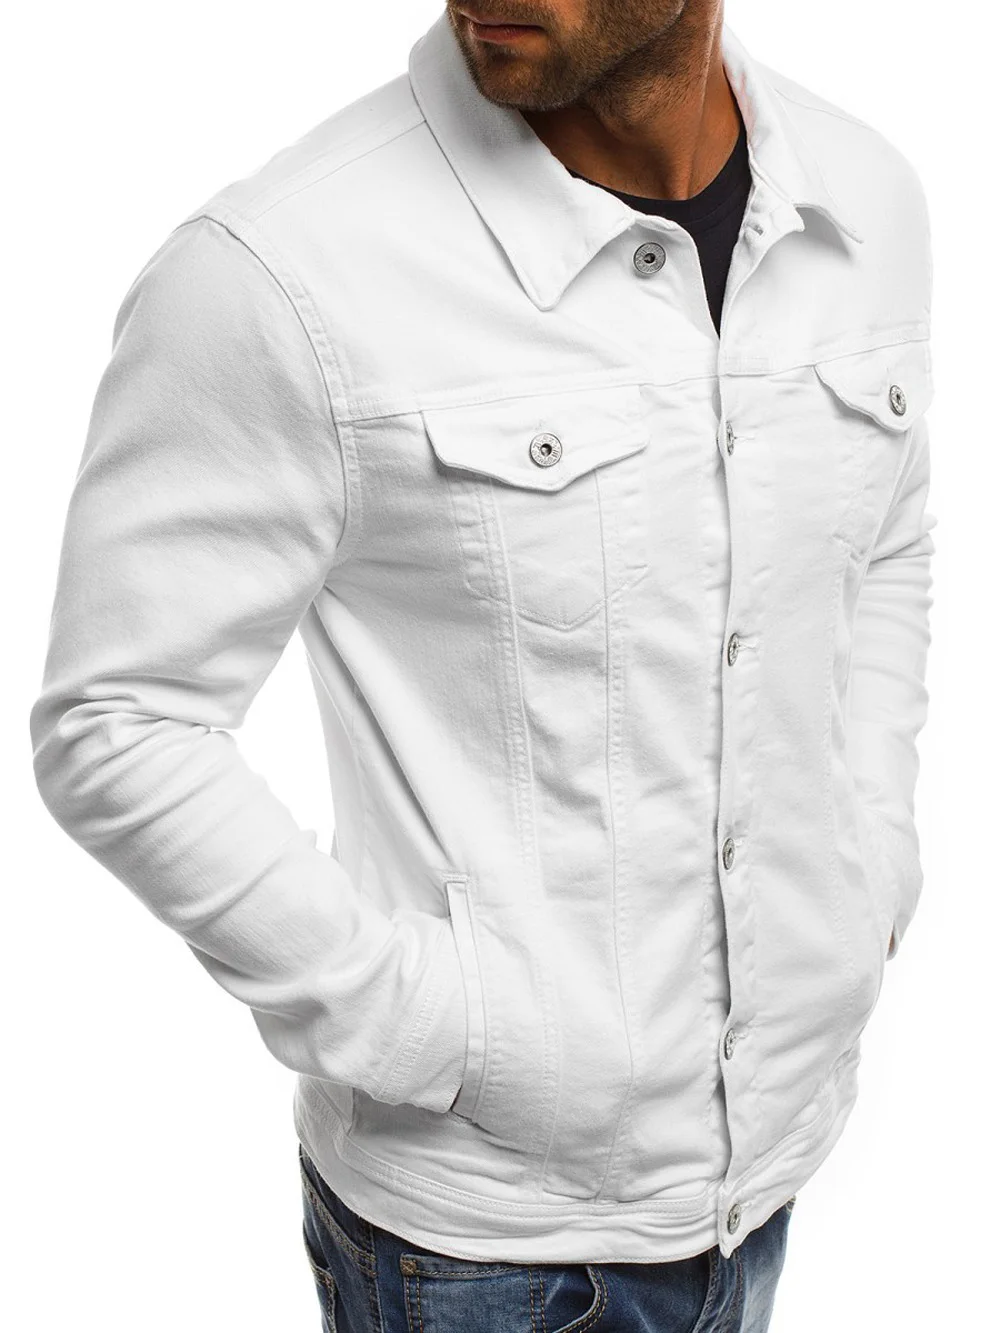 Мужская джинсовая куртка высокого качества модные джинсовые куртки приталенная Повседневная Уличная винтажная Мужская джинсовая одежда размера плюс M-3XL